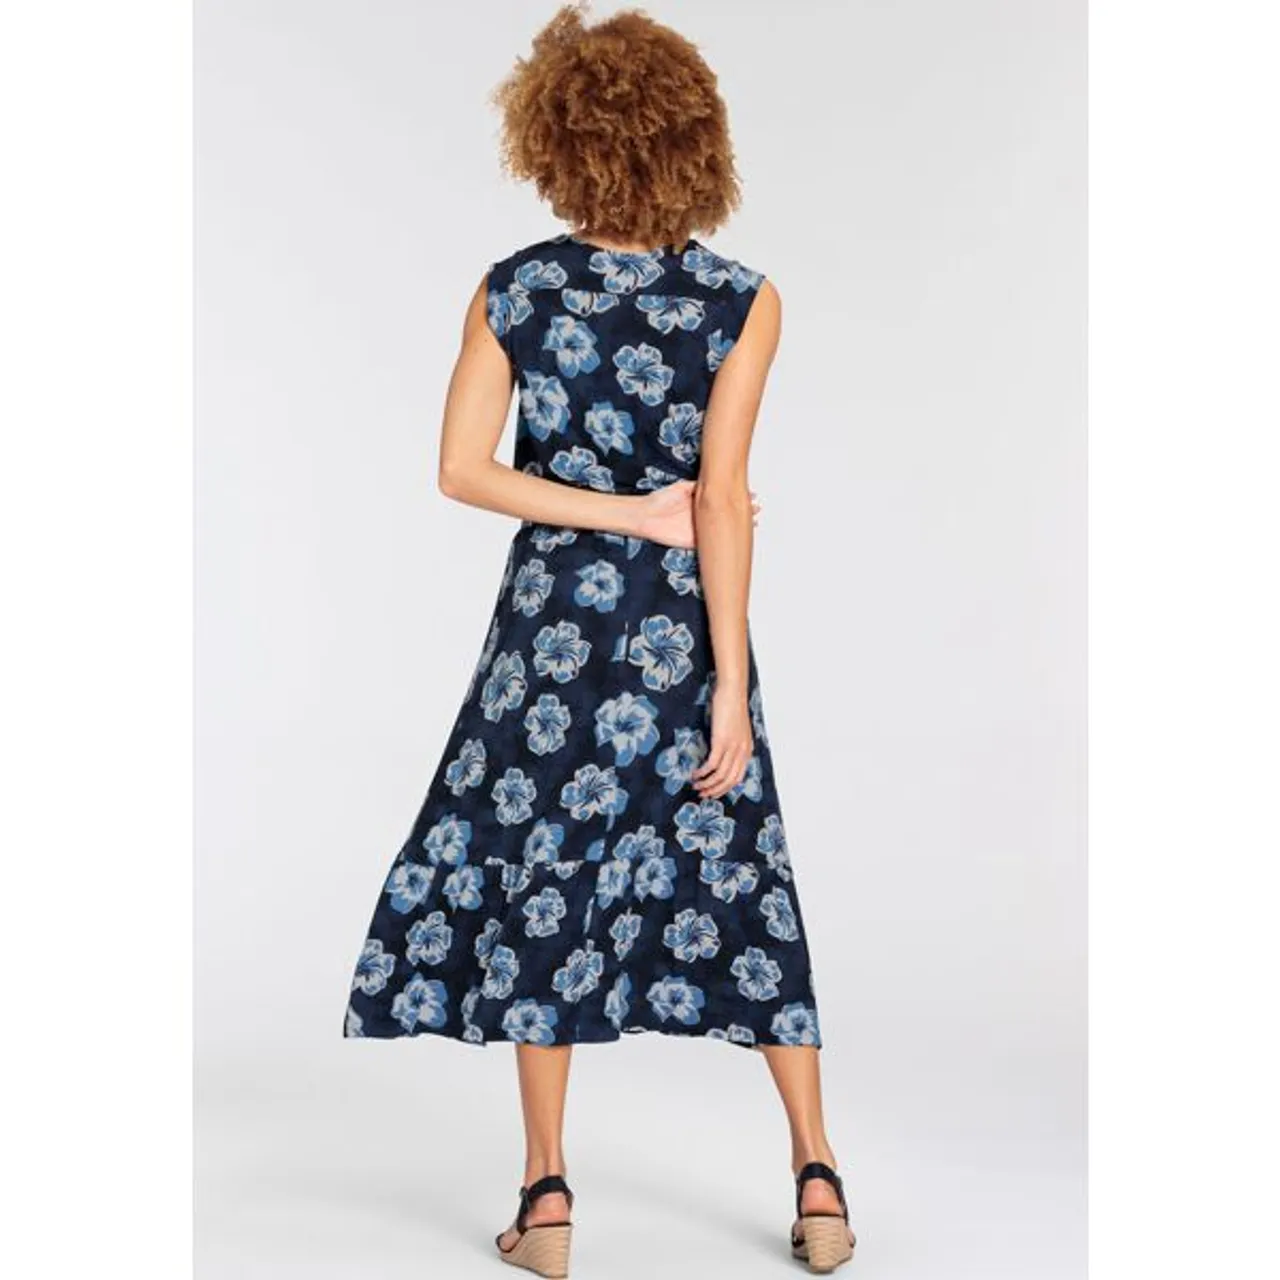 Maxikleid BOYSEN'S Gr. 48, N-Gr, blau (marine) Damen Kleider Strandkleider mit maritimen Floral-Alloverdruck - NEUE KOLLEKTION